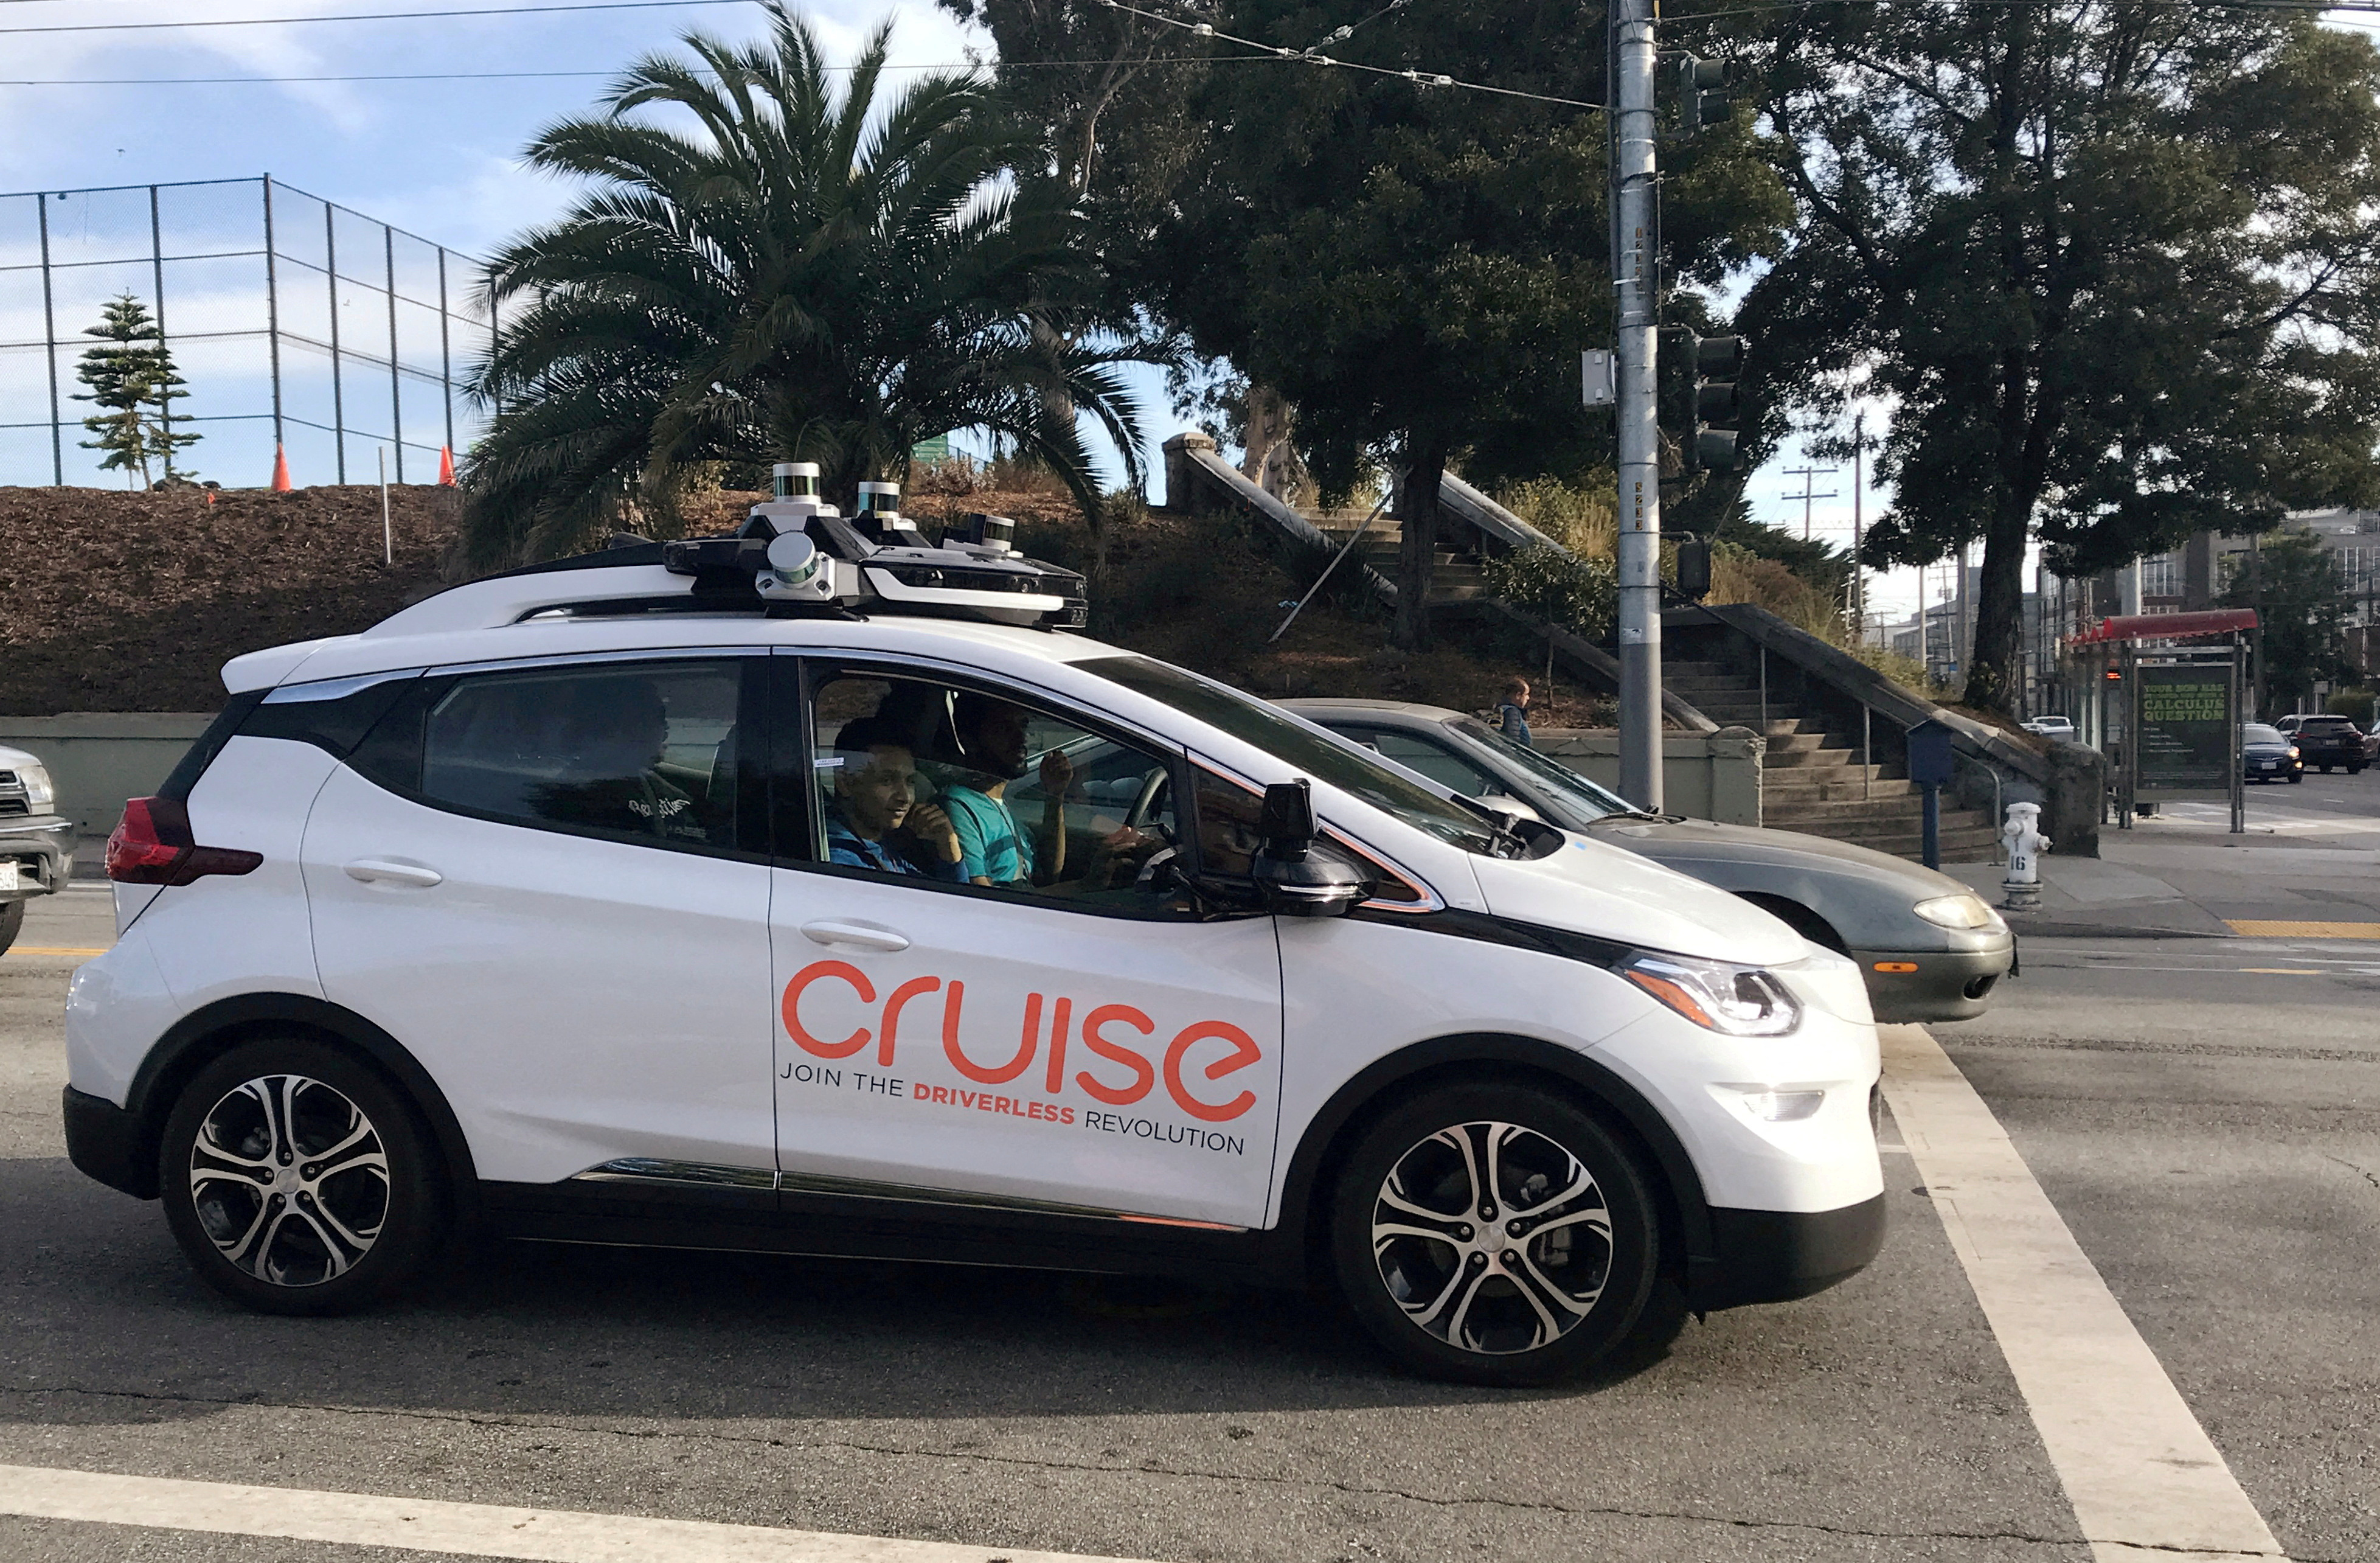 Vor dem Hauptsitz des Unternehmens in San Francisco ist ein selbstfahrendes Cruise-Auto zu sehen, das der General Motors Corp. gehört